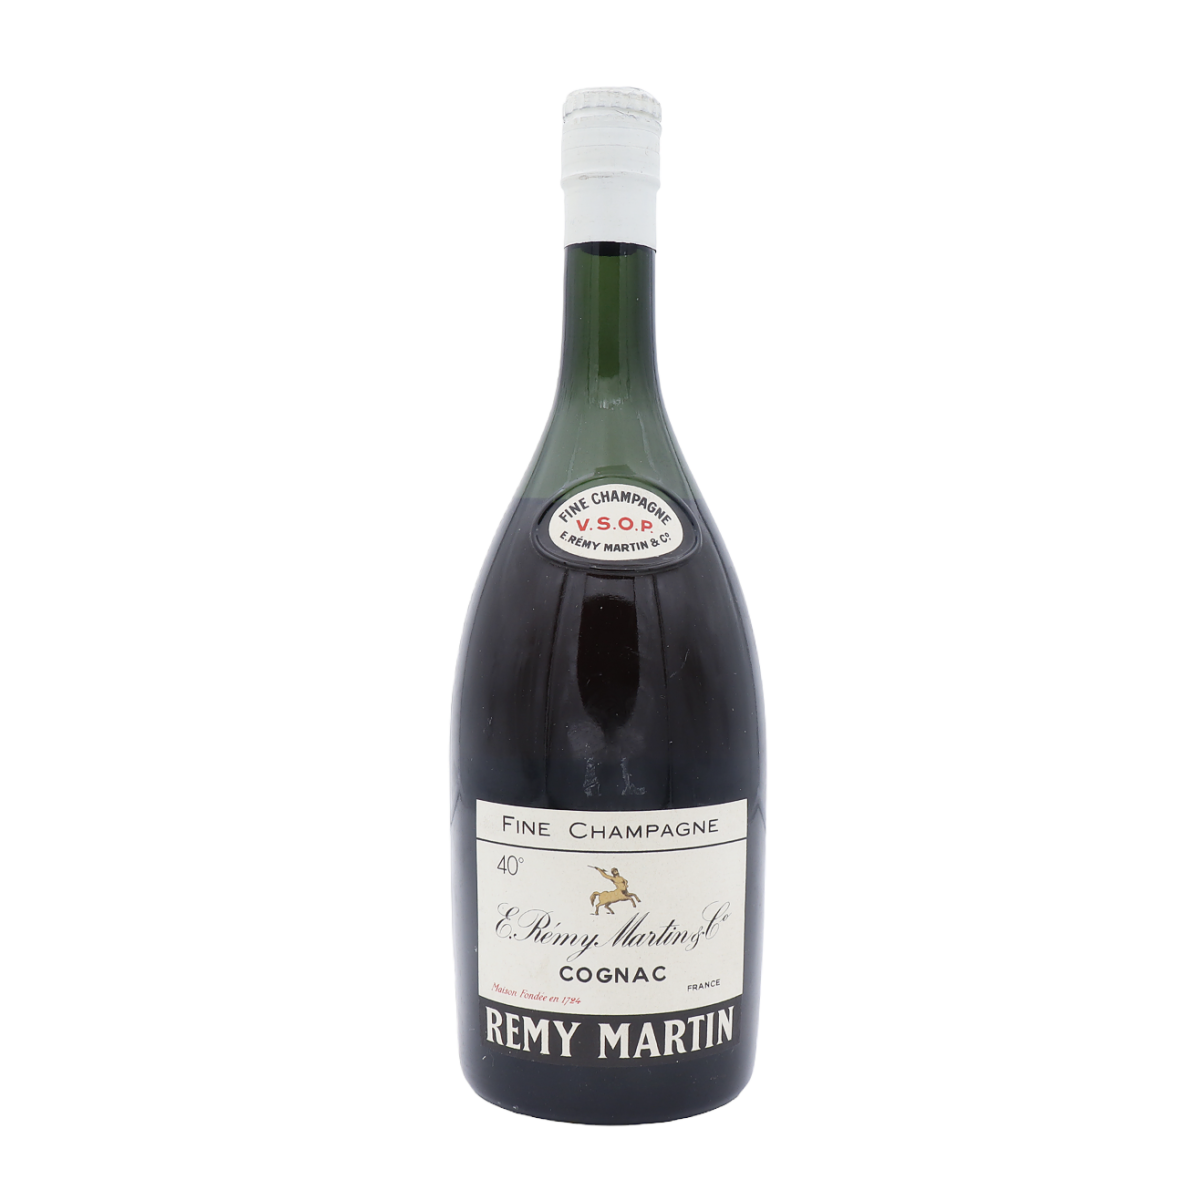 Cognac 1950 Martin Remy 1liter VSOP